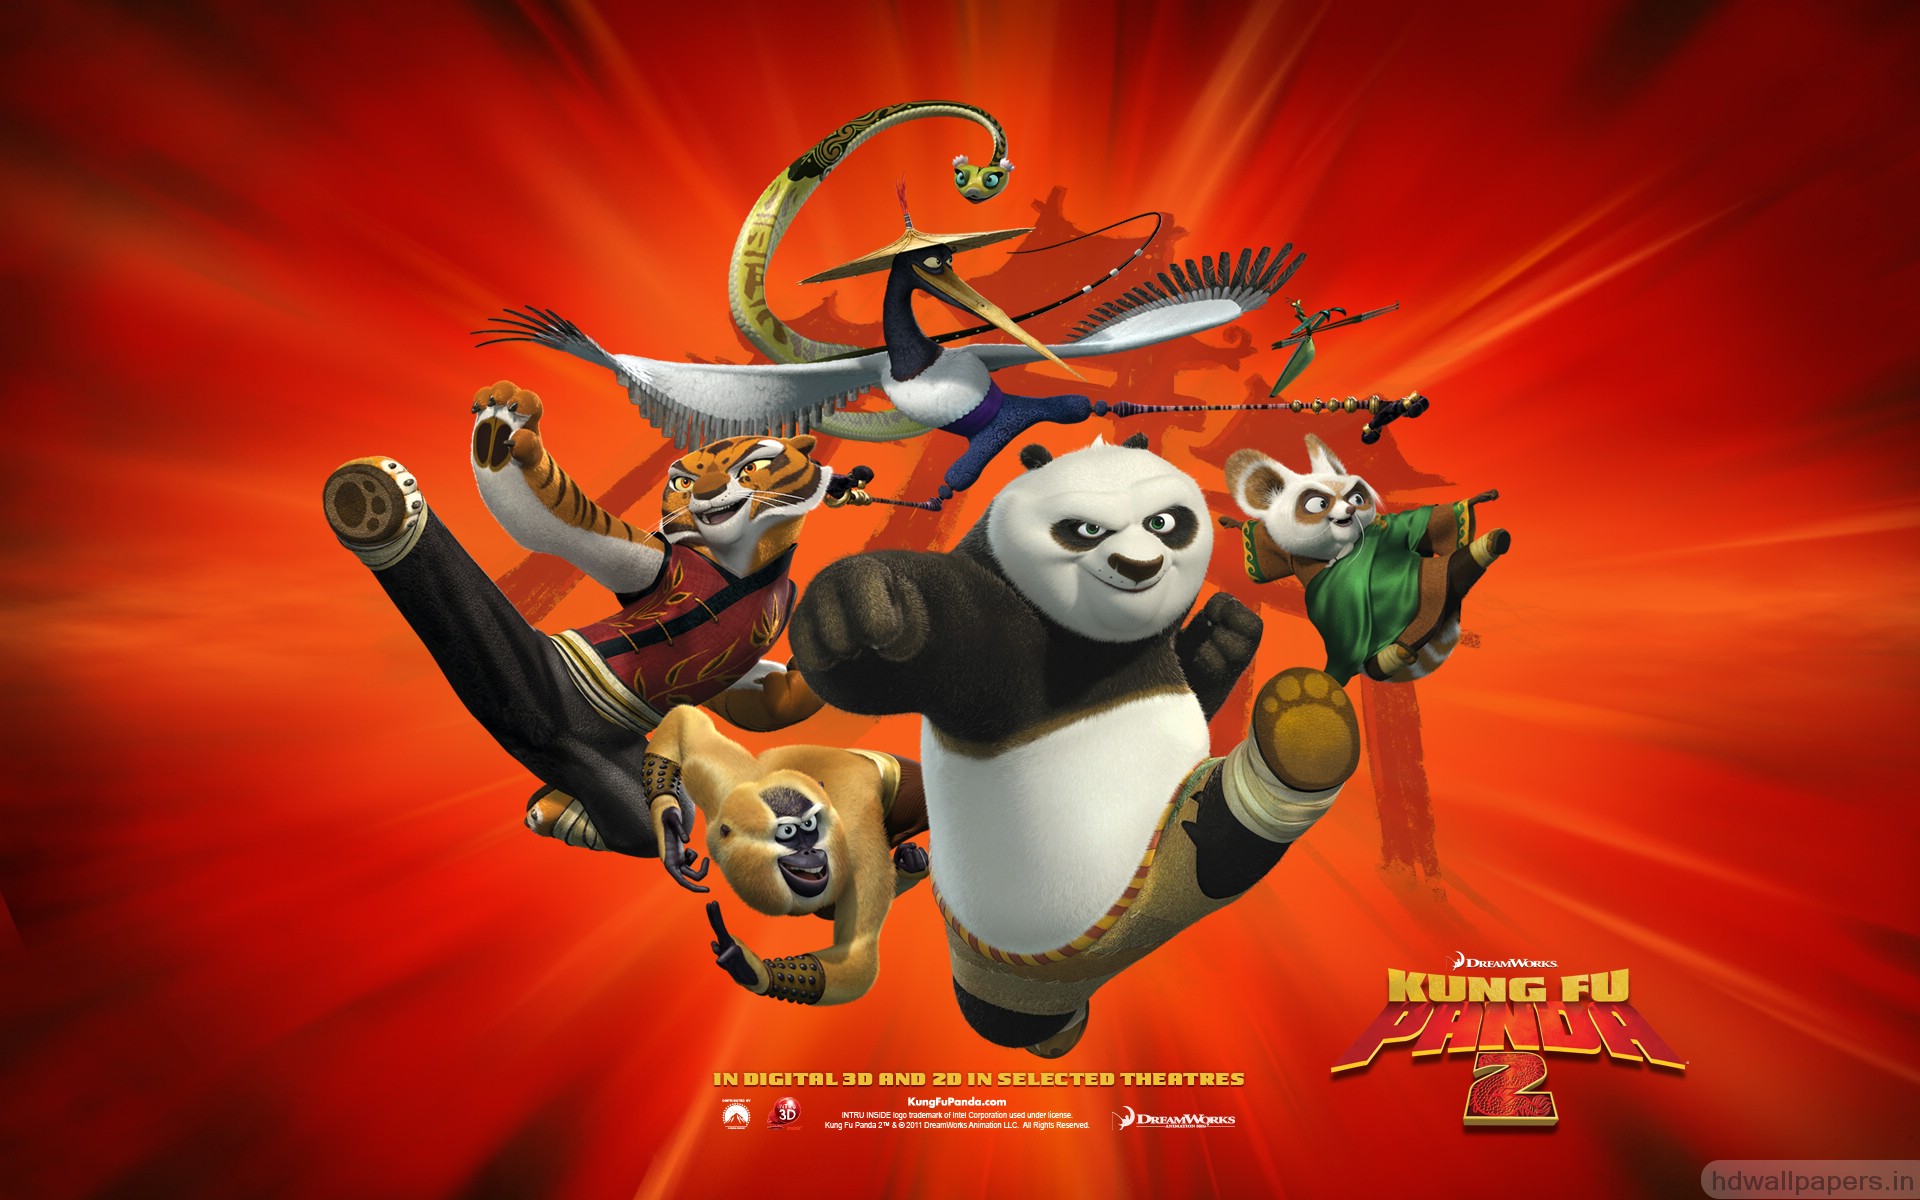 Kung Fu Panda World Free Download